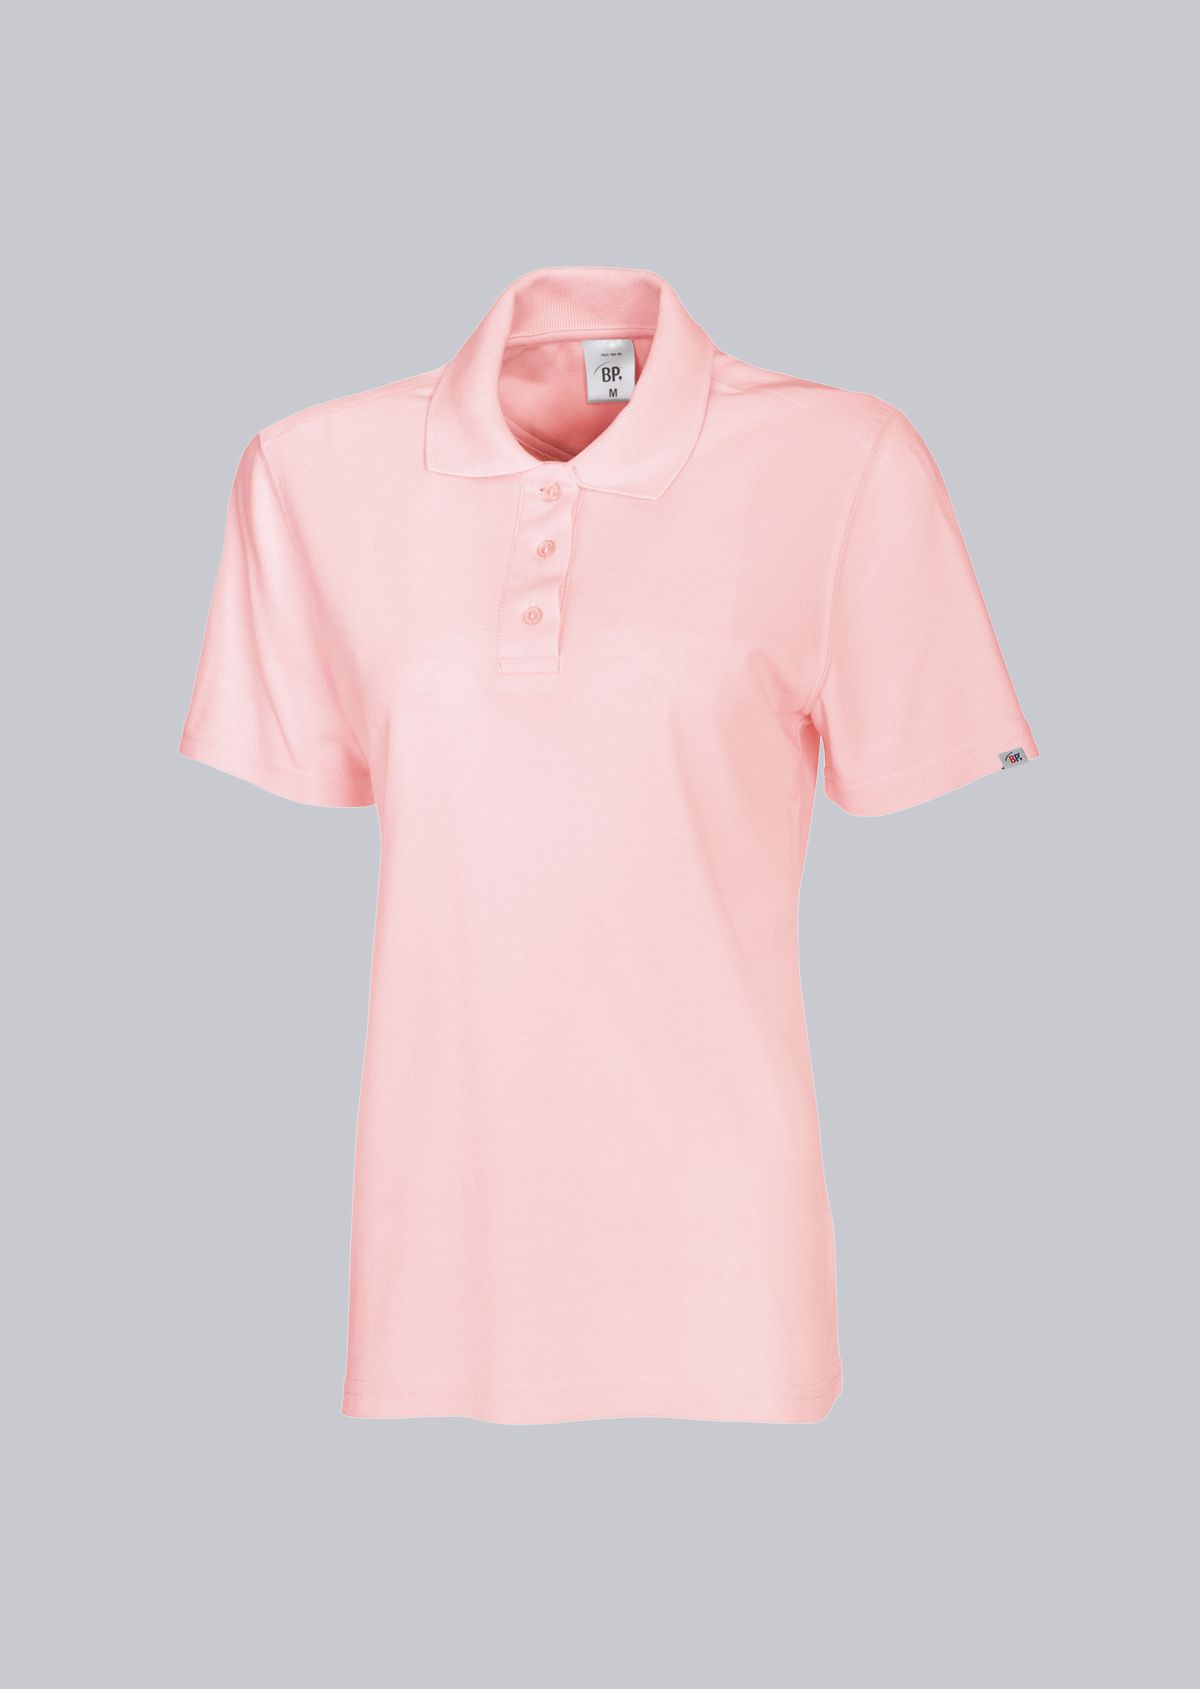 BP® Damen-Poloshirt